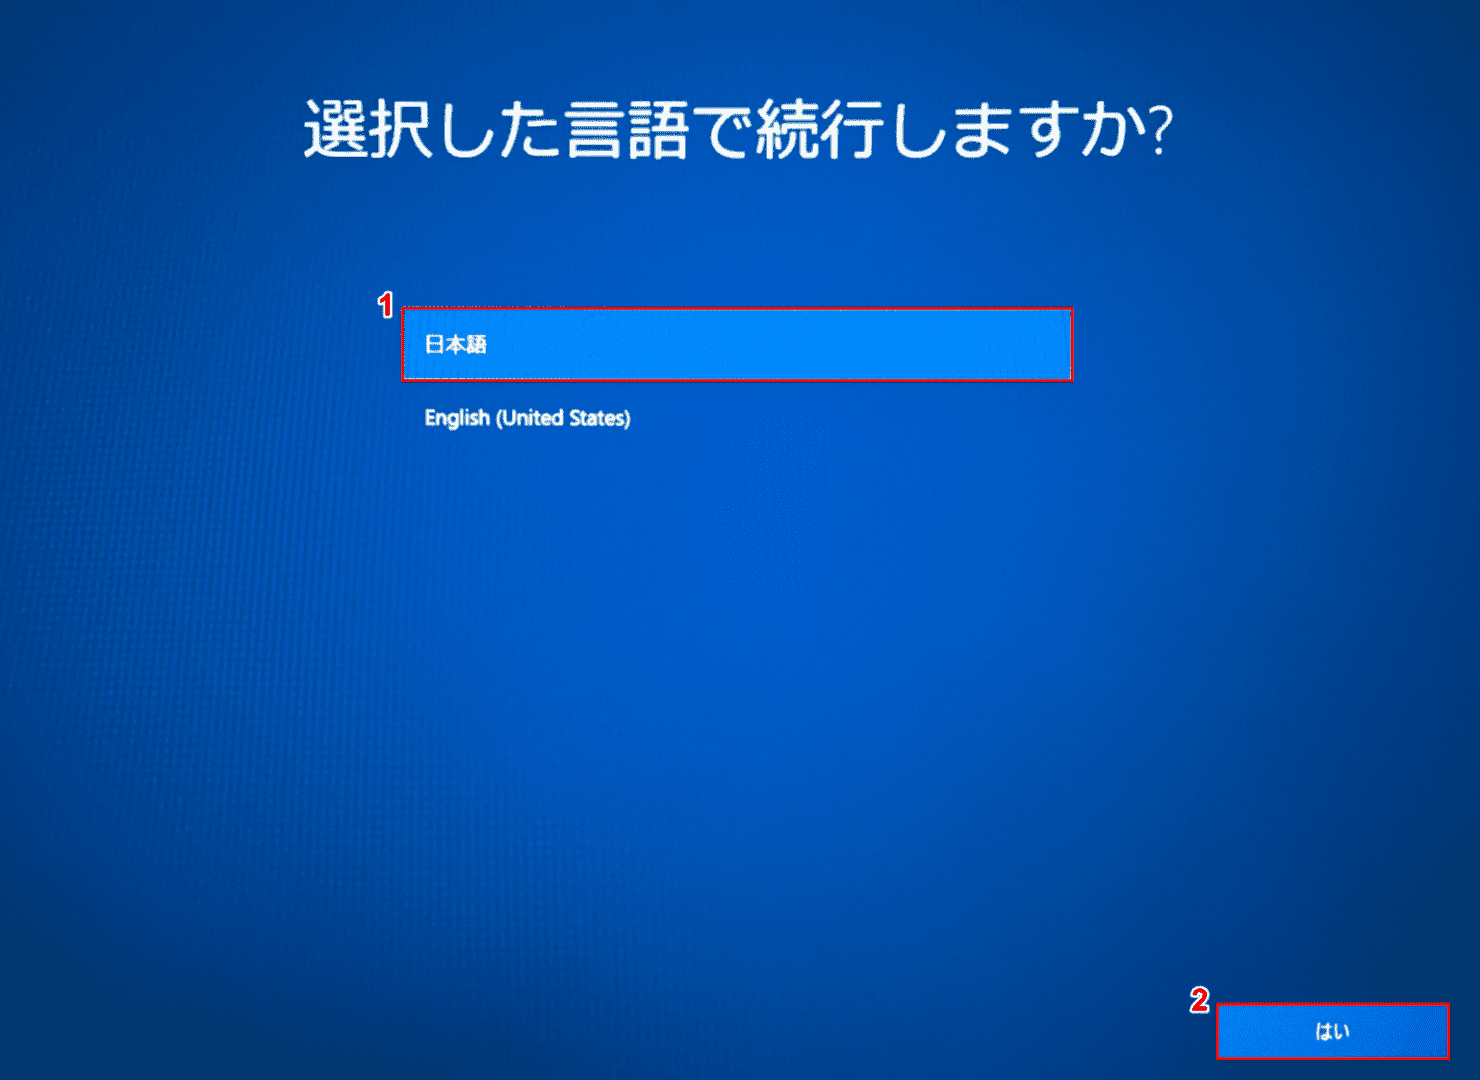 Windows10ローカルアカウントでの初期設定、言語の選択